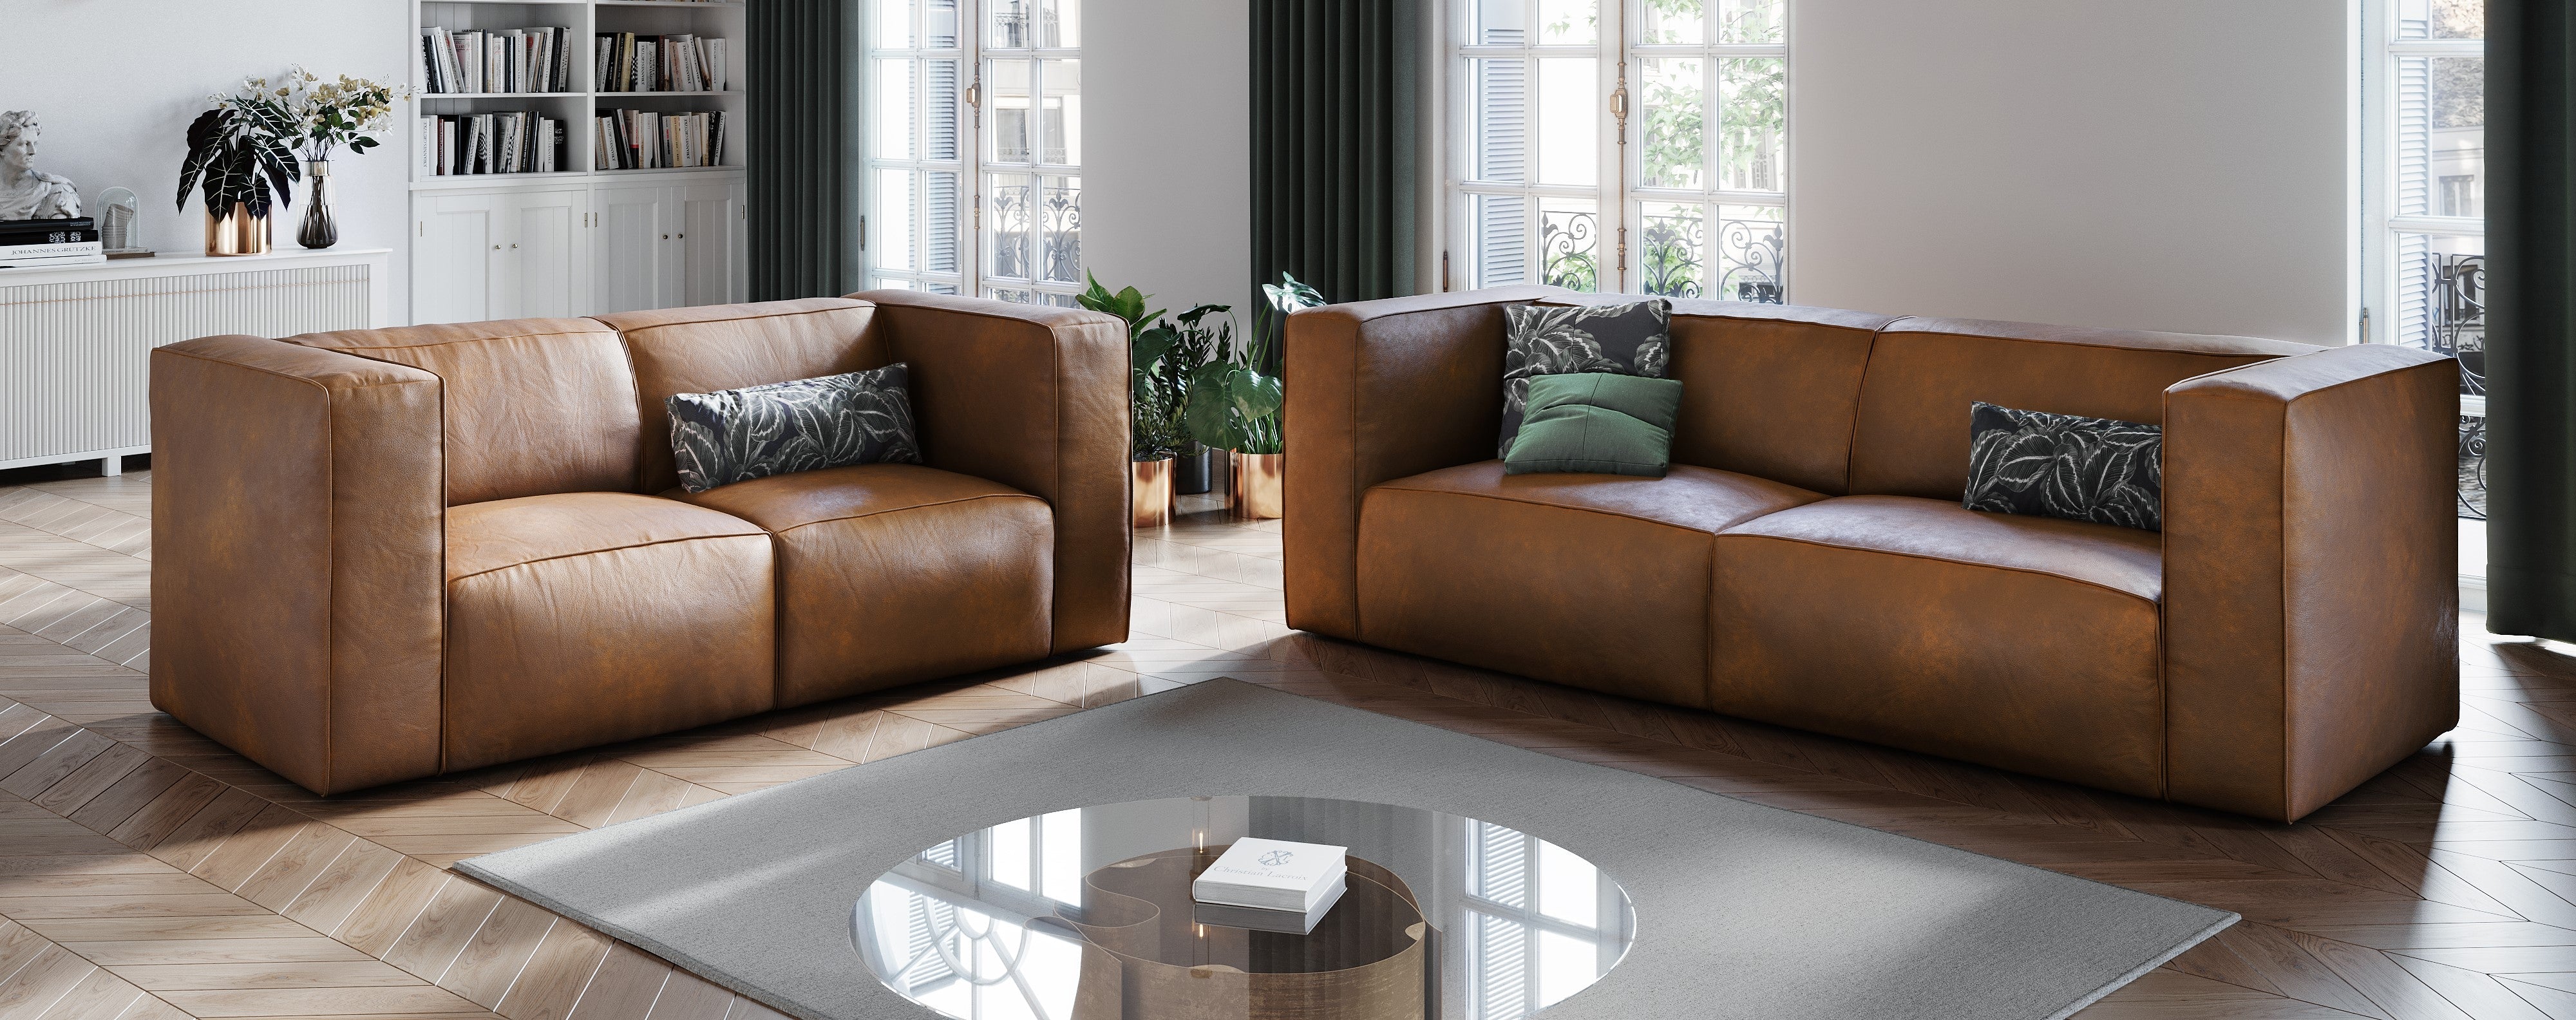 Obraz przedstawia salon z dwoma skórzanymi sofami. Przed sofami znajduje się szklany stolik kawowy. Całe pomieszczenie jest dopełnione podłogą ułożoną w wzór jodełki.